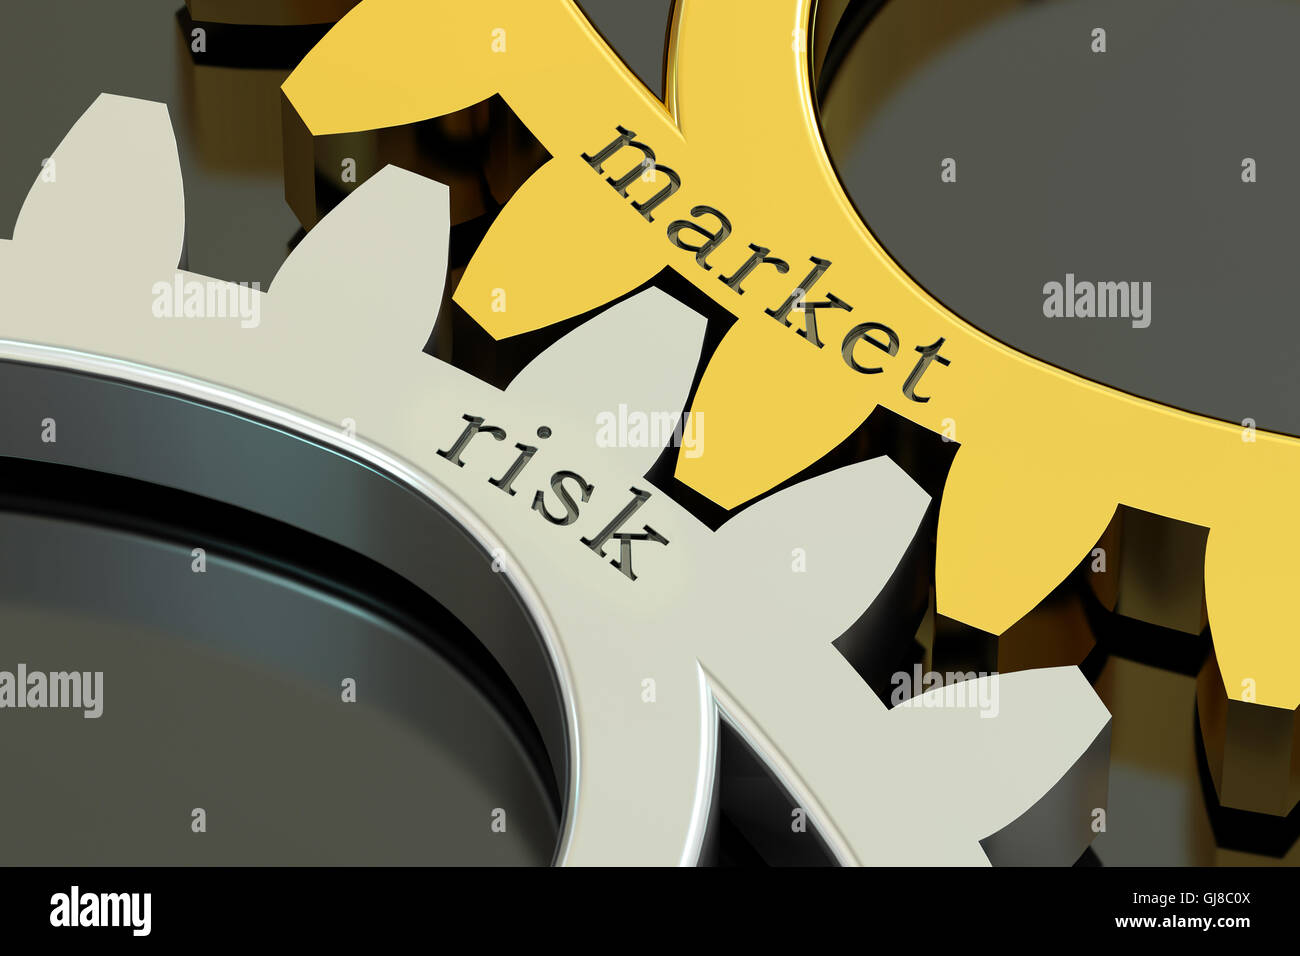 Markt-Risk-Konzept auf die Zahnräder, 3D rendering Stockfoto